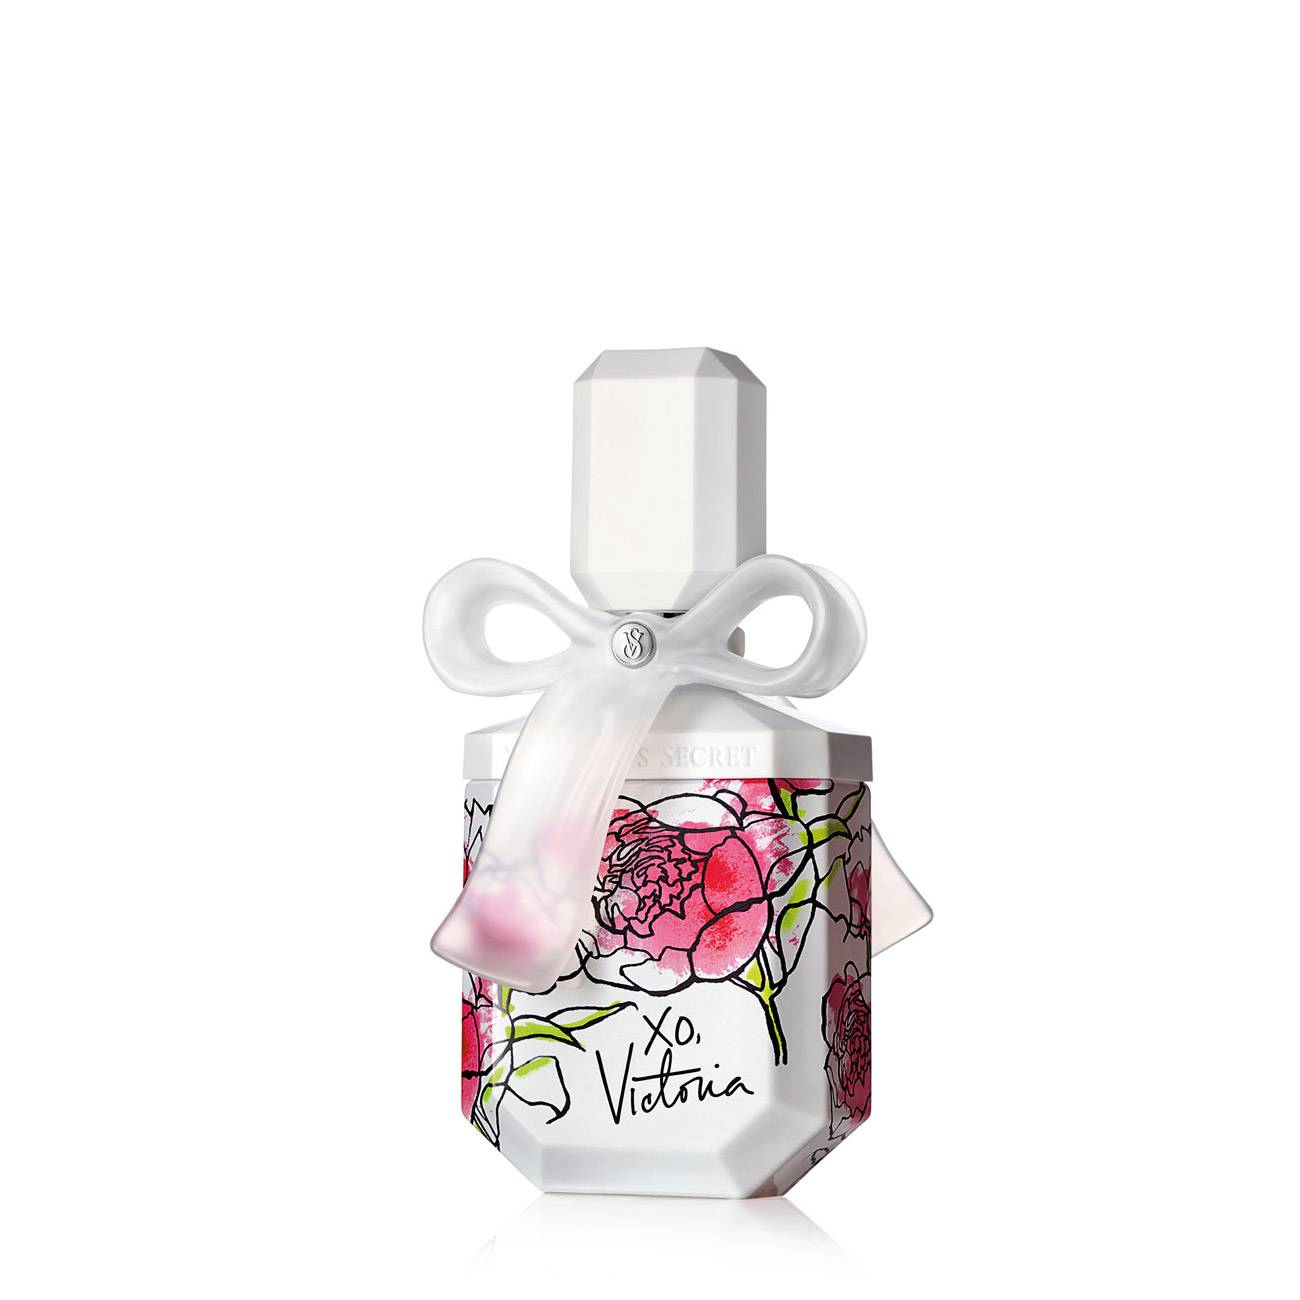 Apa de Parfum Victoria's Secret XO VICTORIA 50ml cu comanda online